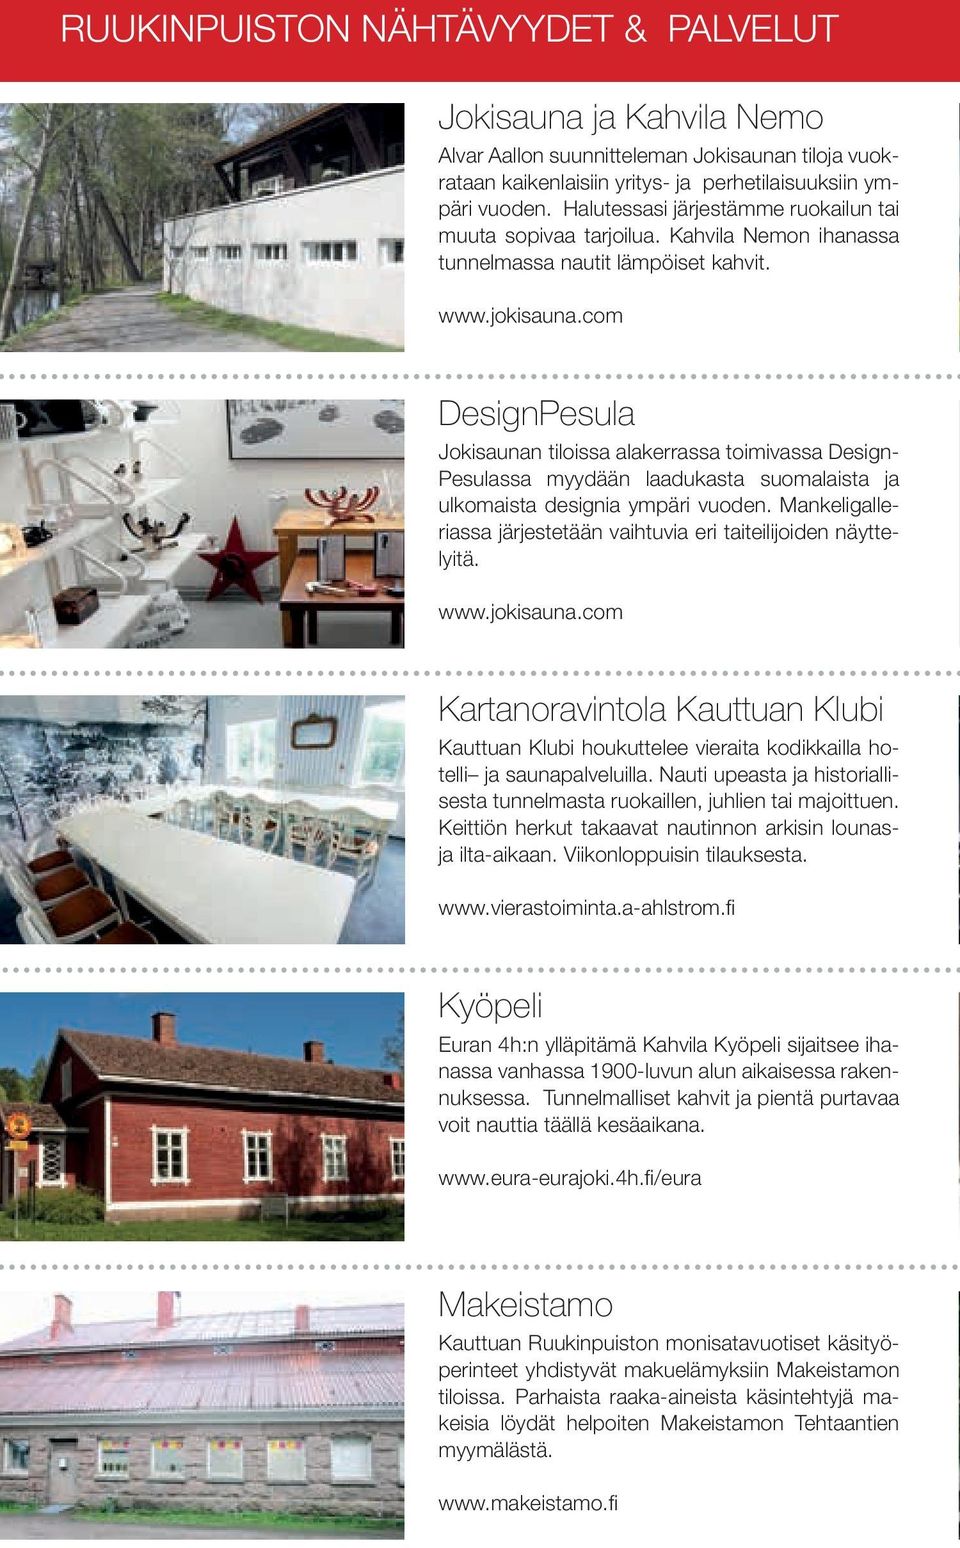 com DesignPesula Jokisaunan tiloissa alakerrassa toimivassa Design- Pesulassa myydään laadukasta suomalaista ja ulkomaista designia ympäri vuoden.